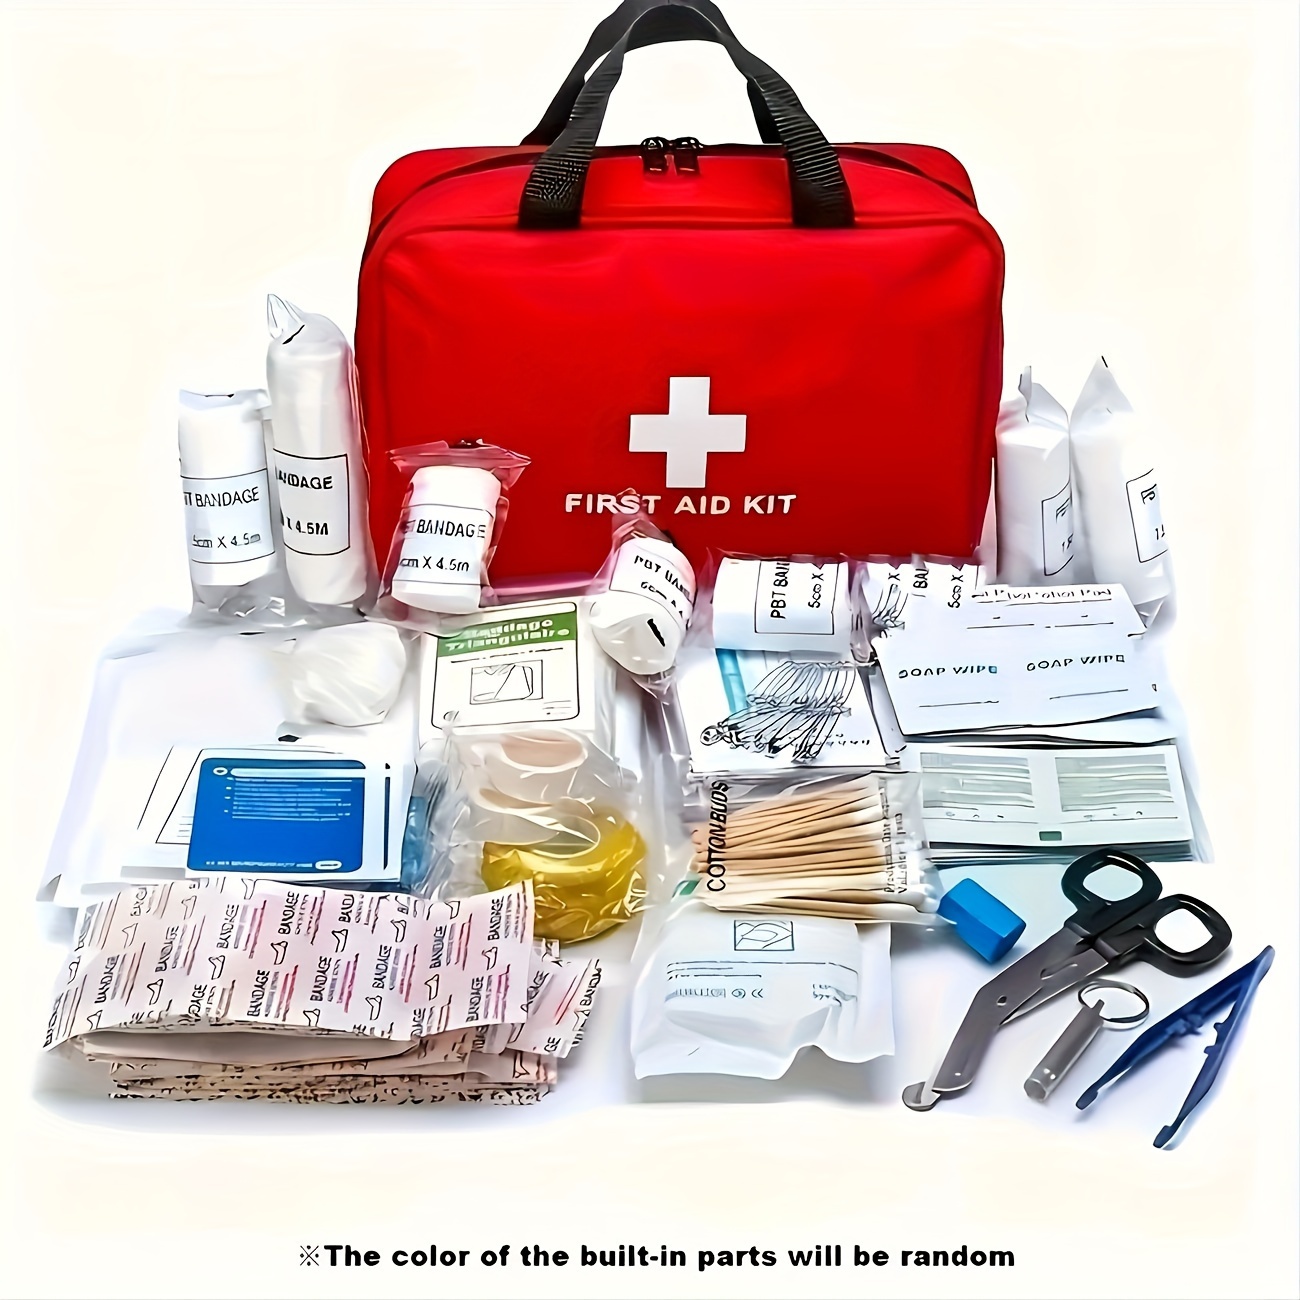 Kit di pronto soccorso completi per strutture sanitarie, aziende e privati